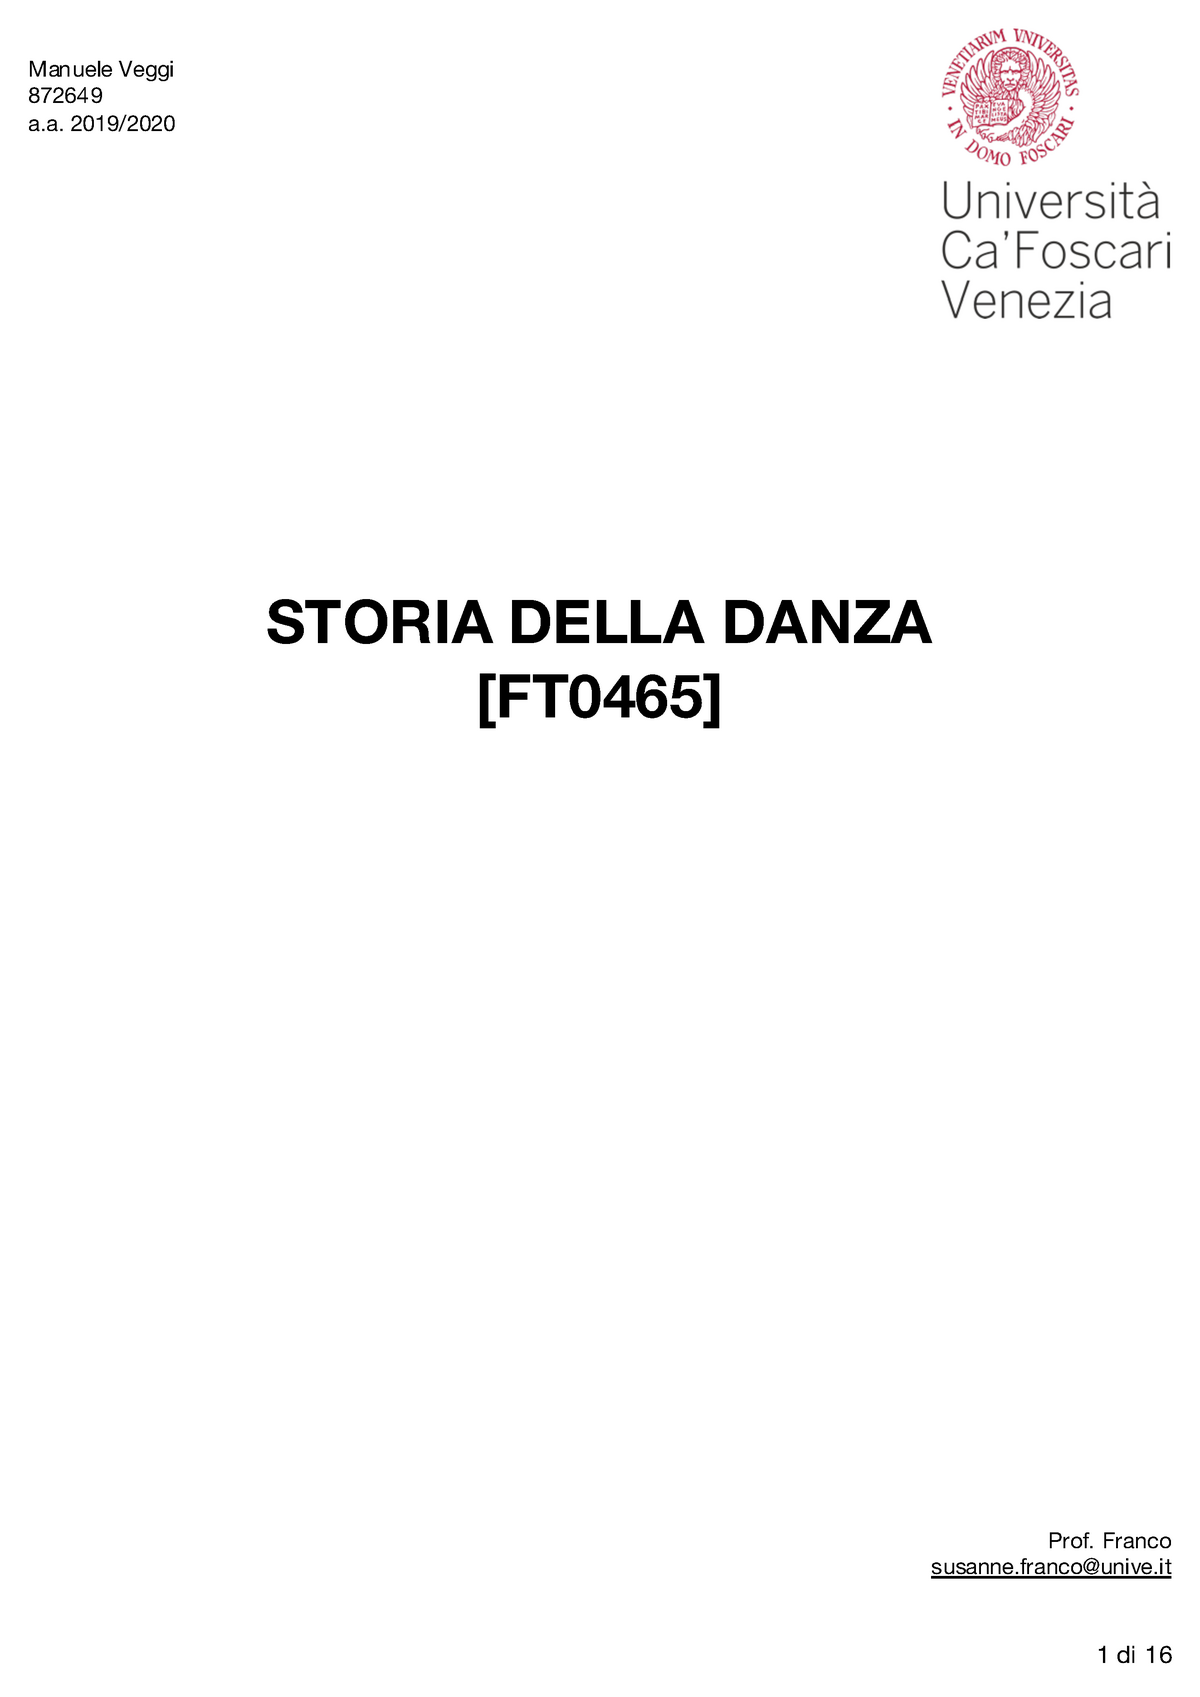 Storia della Danza - Appunti 1-12 - Manuele Veggi 87264 9 a Immagine